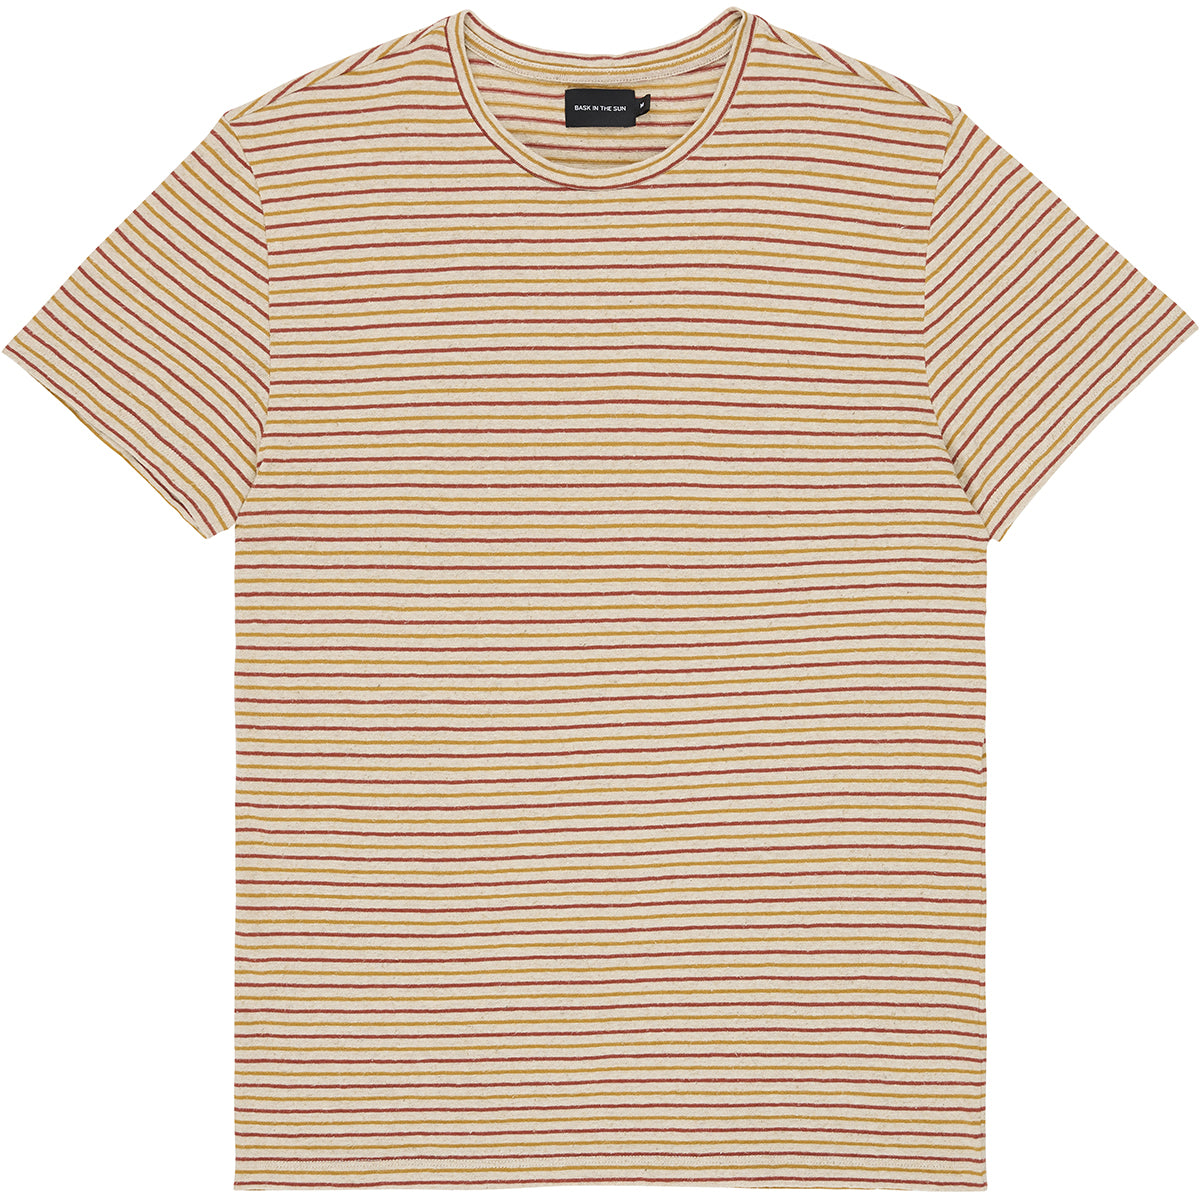 Esteban t-shirt stripe burnt - Bask in the sun